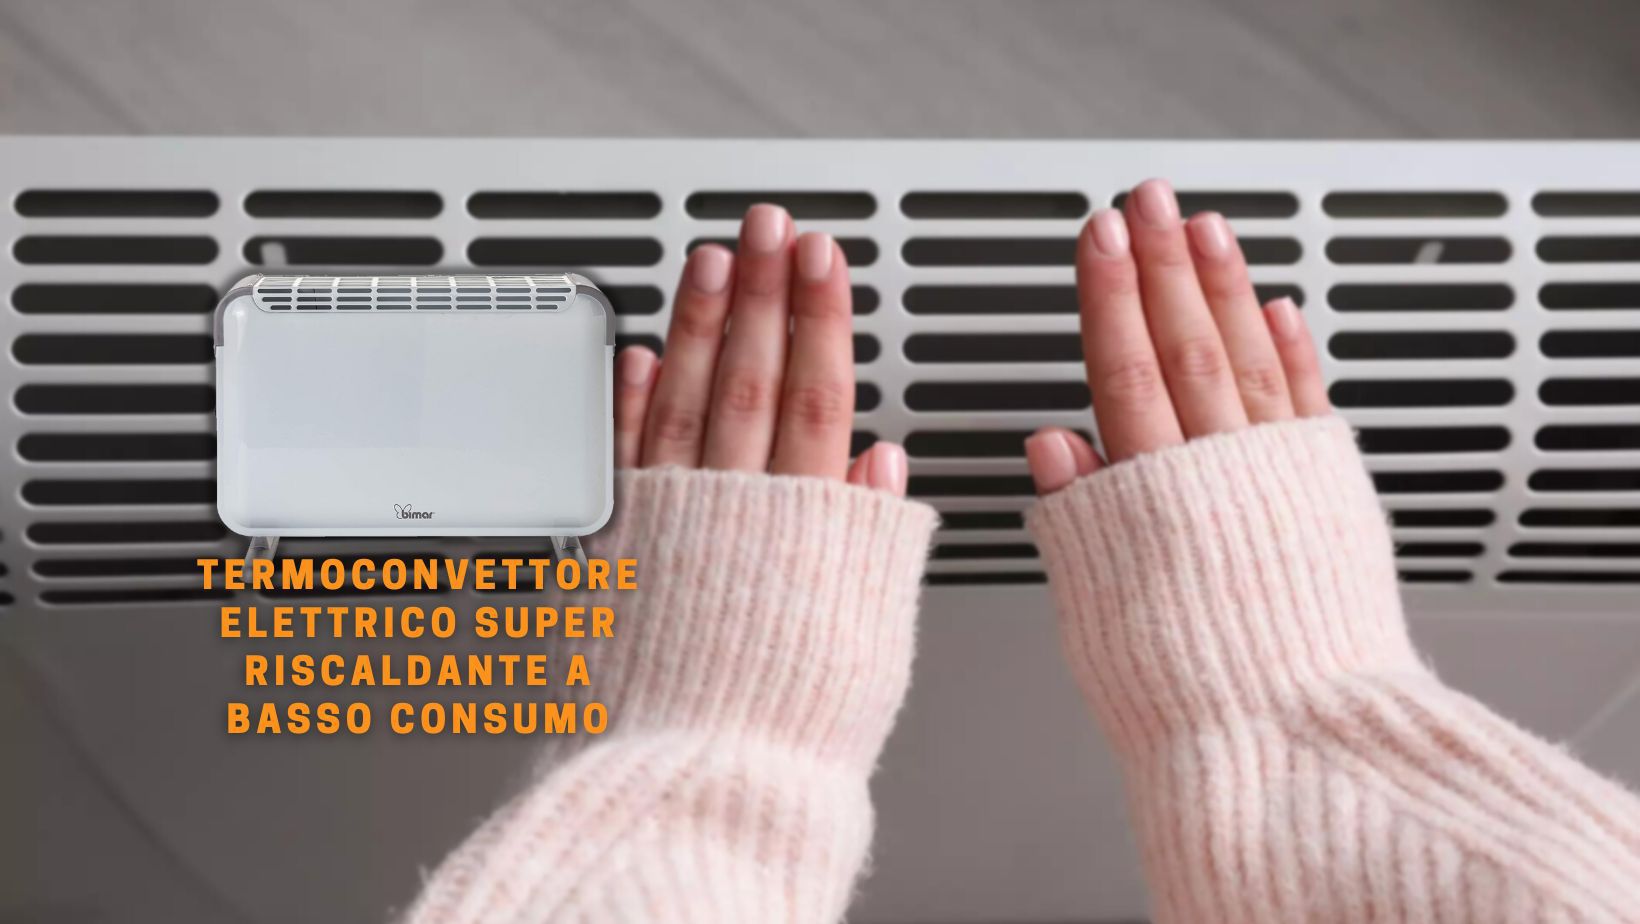 Termoconvettore elettrico super riscaldante: ti sembrerà di stare in Qatar  - Webnews